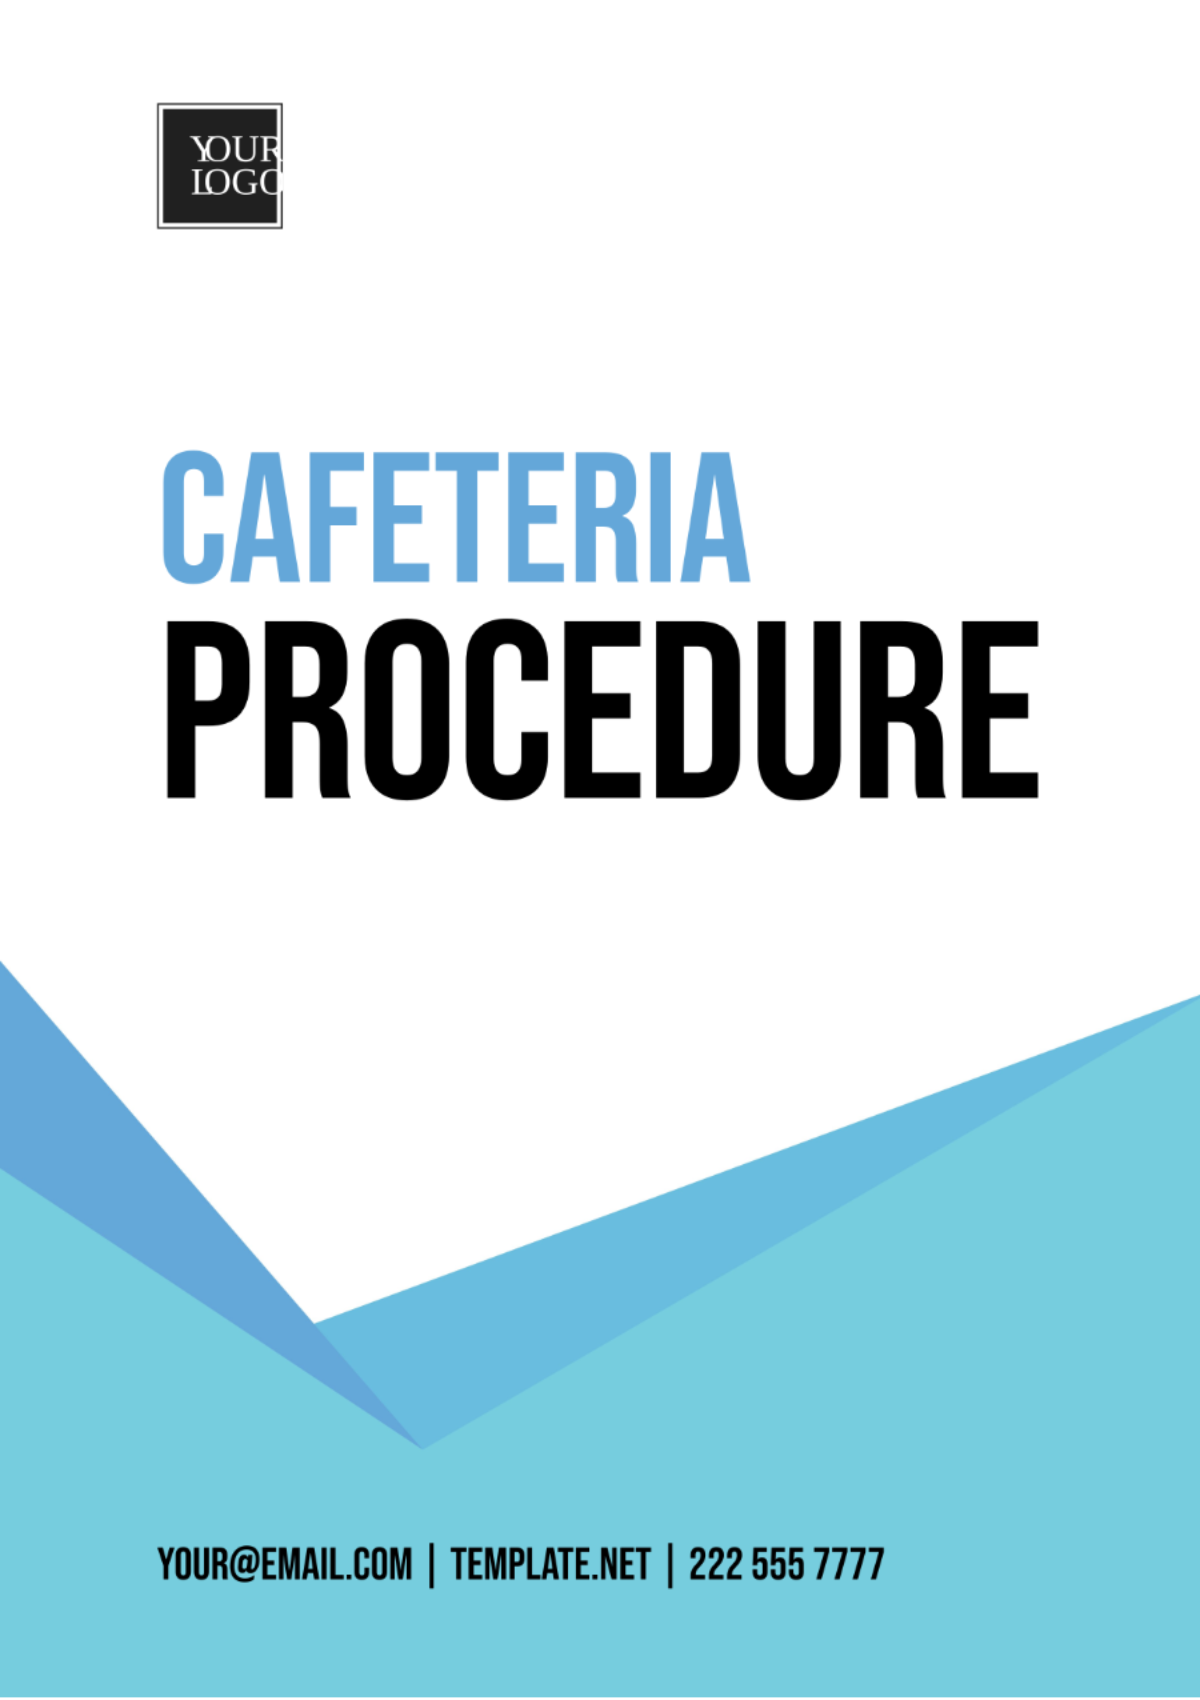 Cafeteria Procedure Template